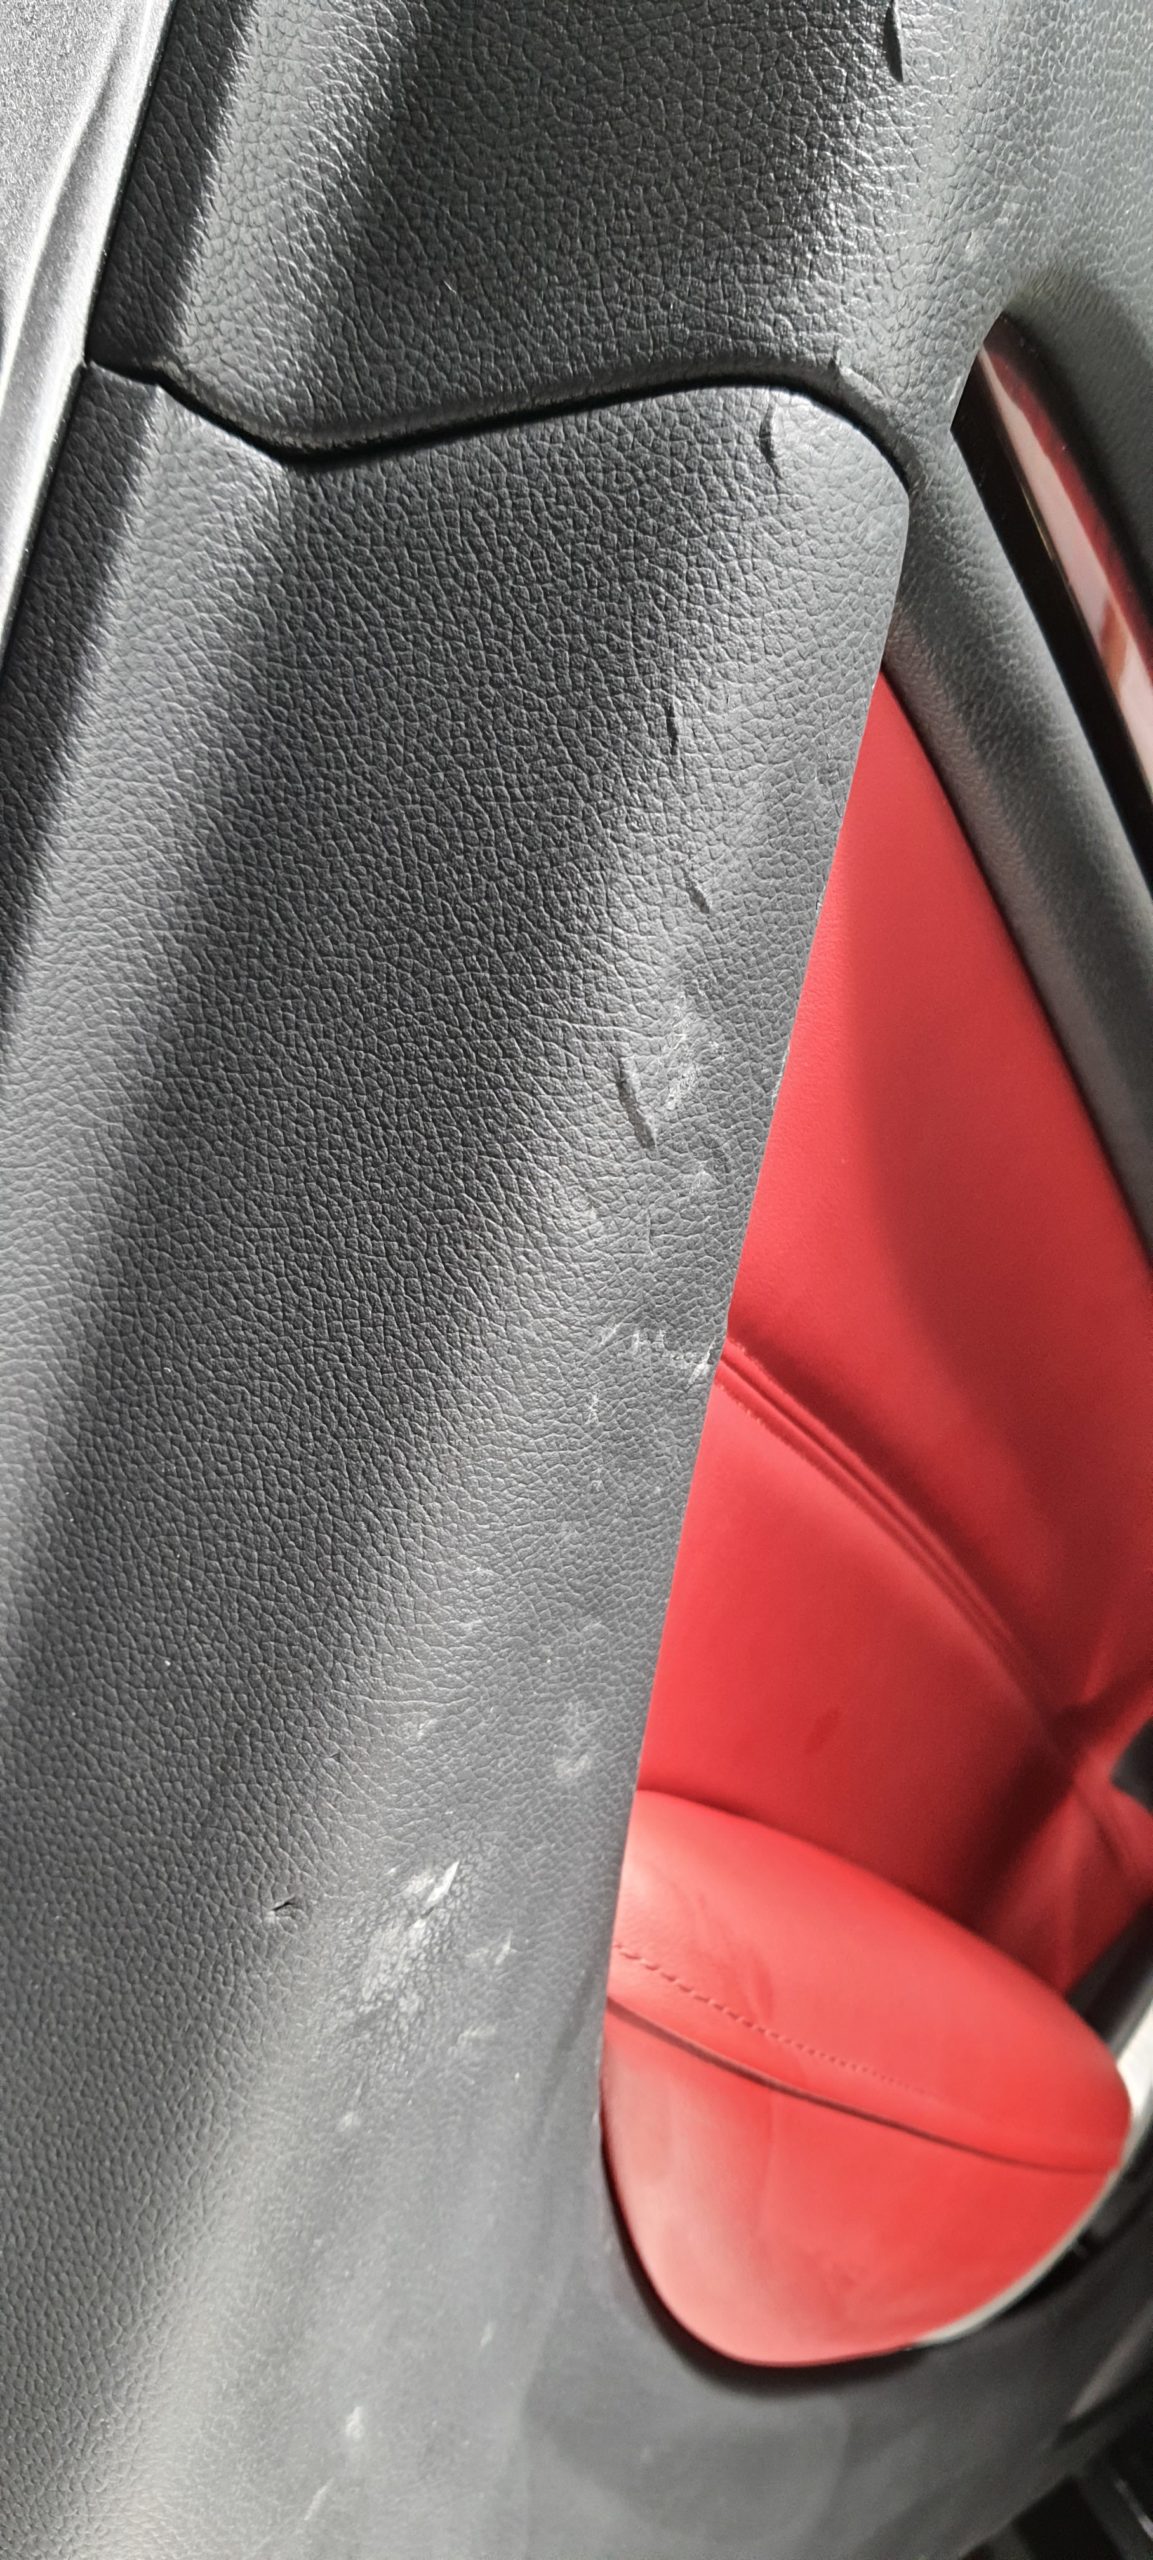 Réparation d'un panneau de porte d'Infinity Q35 Cabriolet, en cause de ces grosses éraflures et déchirements : La boucle de ceinture de sécurité mal enroulée et mal rangée dans son logement